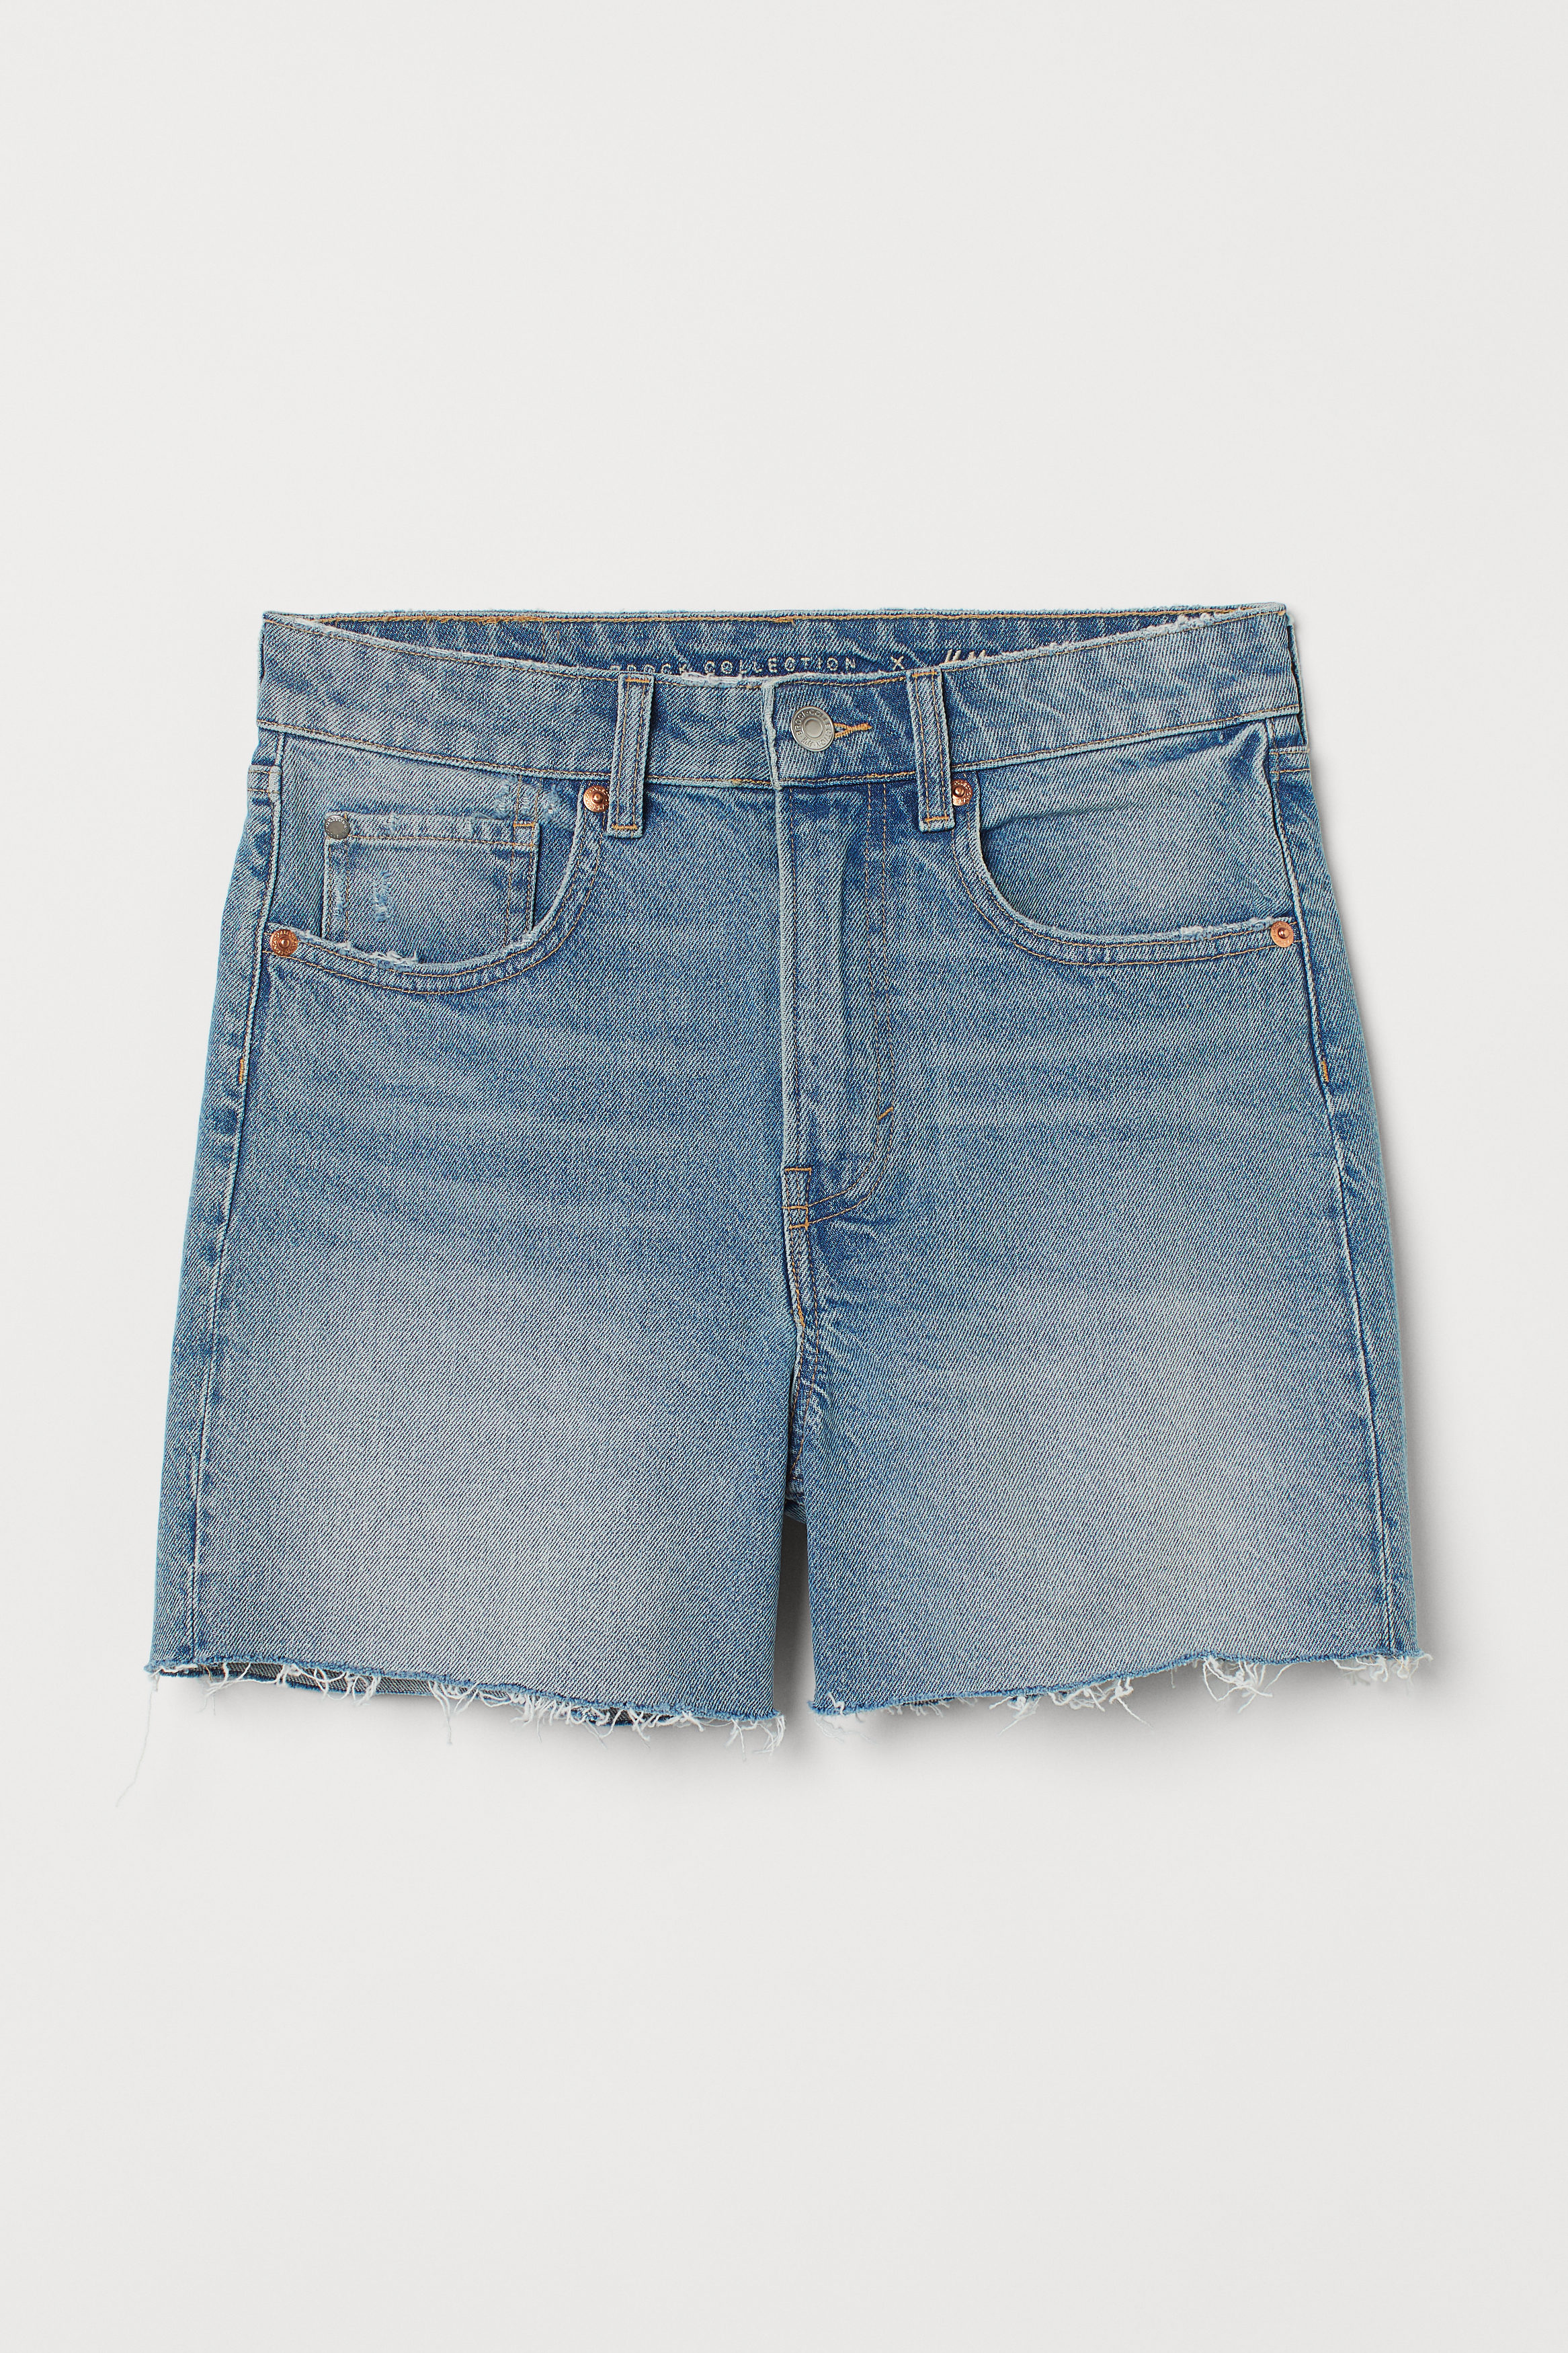 H&M Shorts jeans DAMEN Jeans Shorts jeans Destroyed Rabatt 66 % Blau 36 